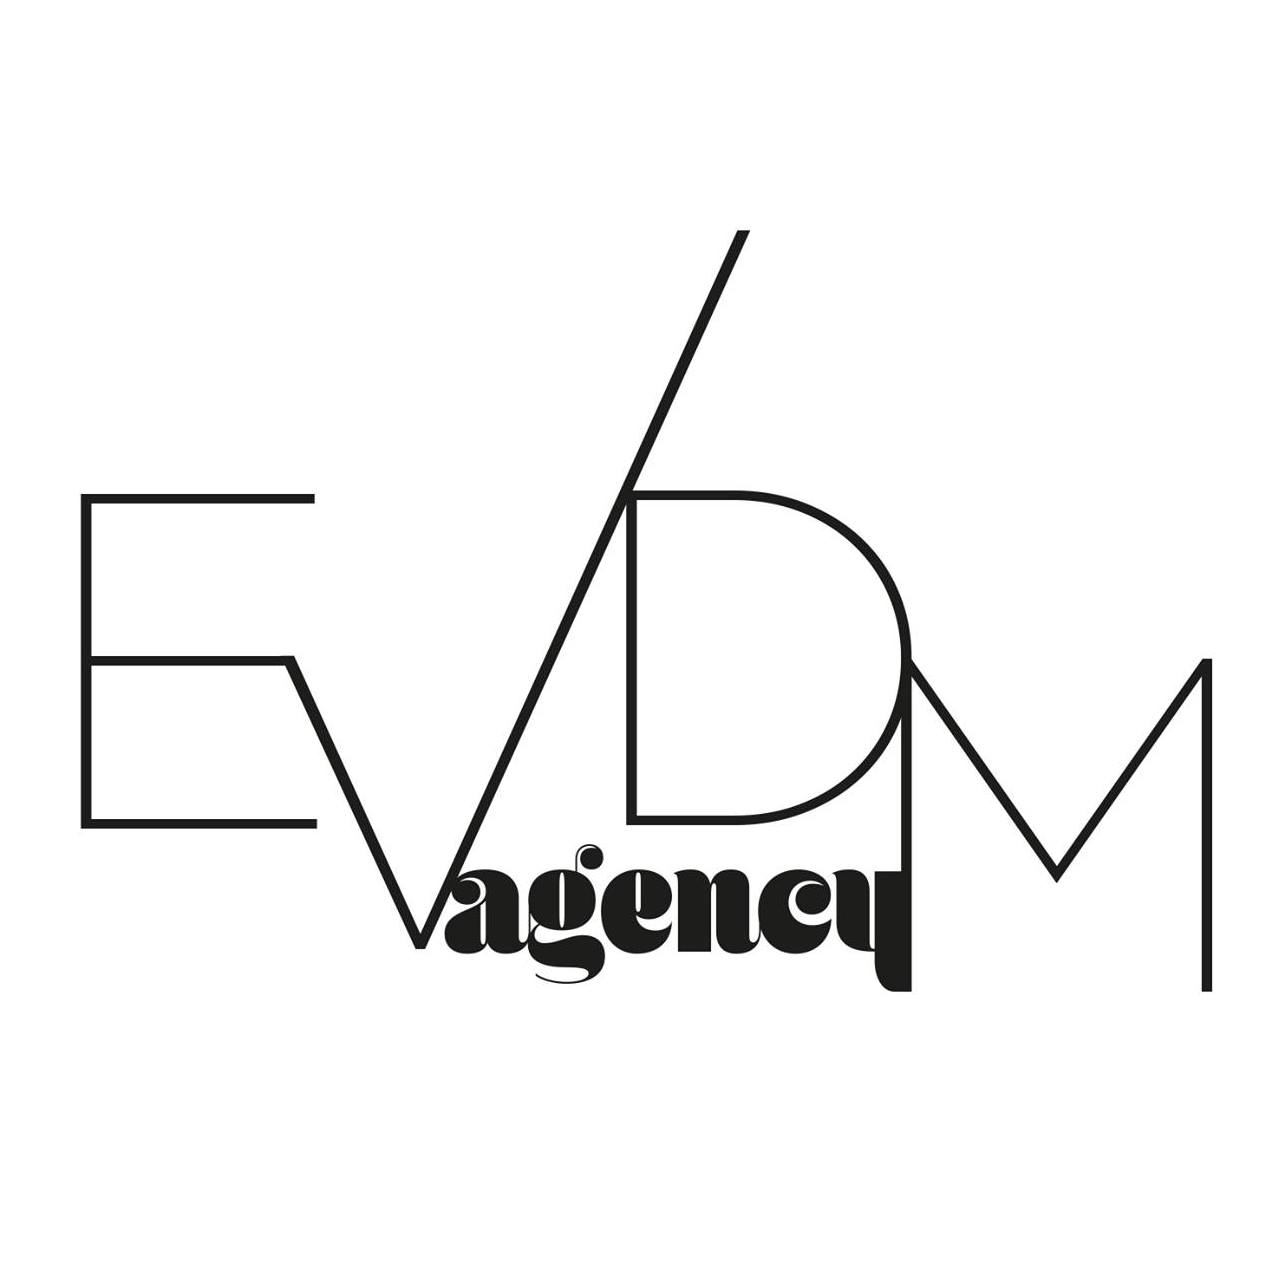 Evdm Agency